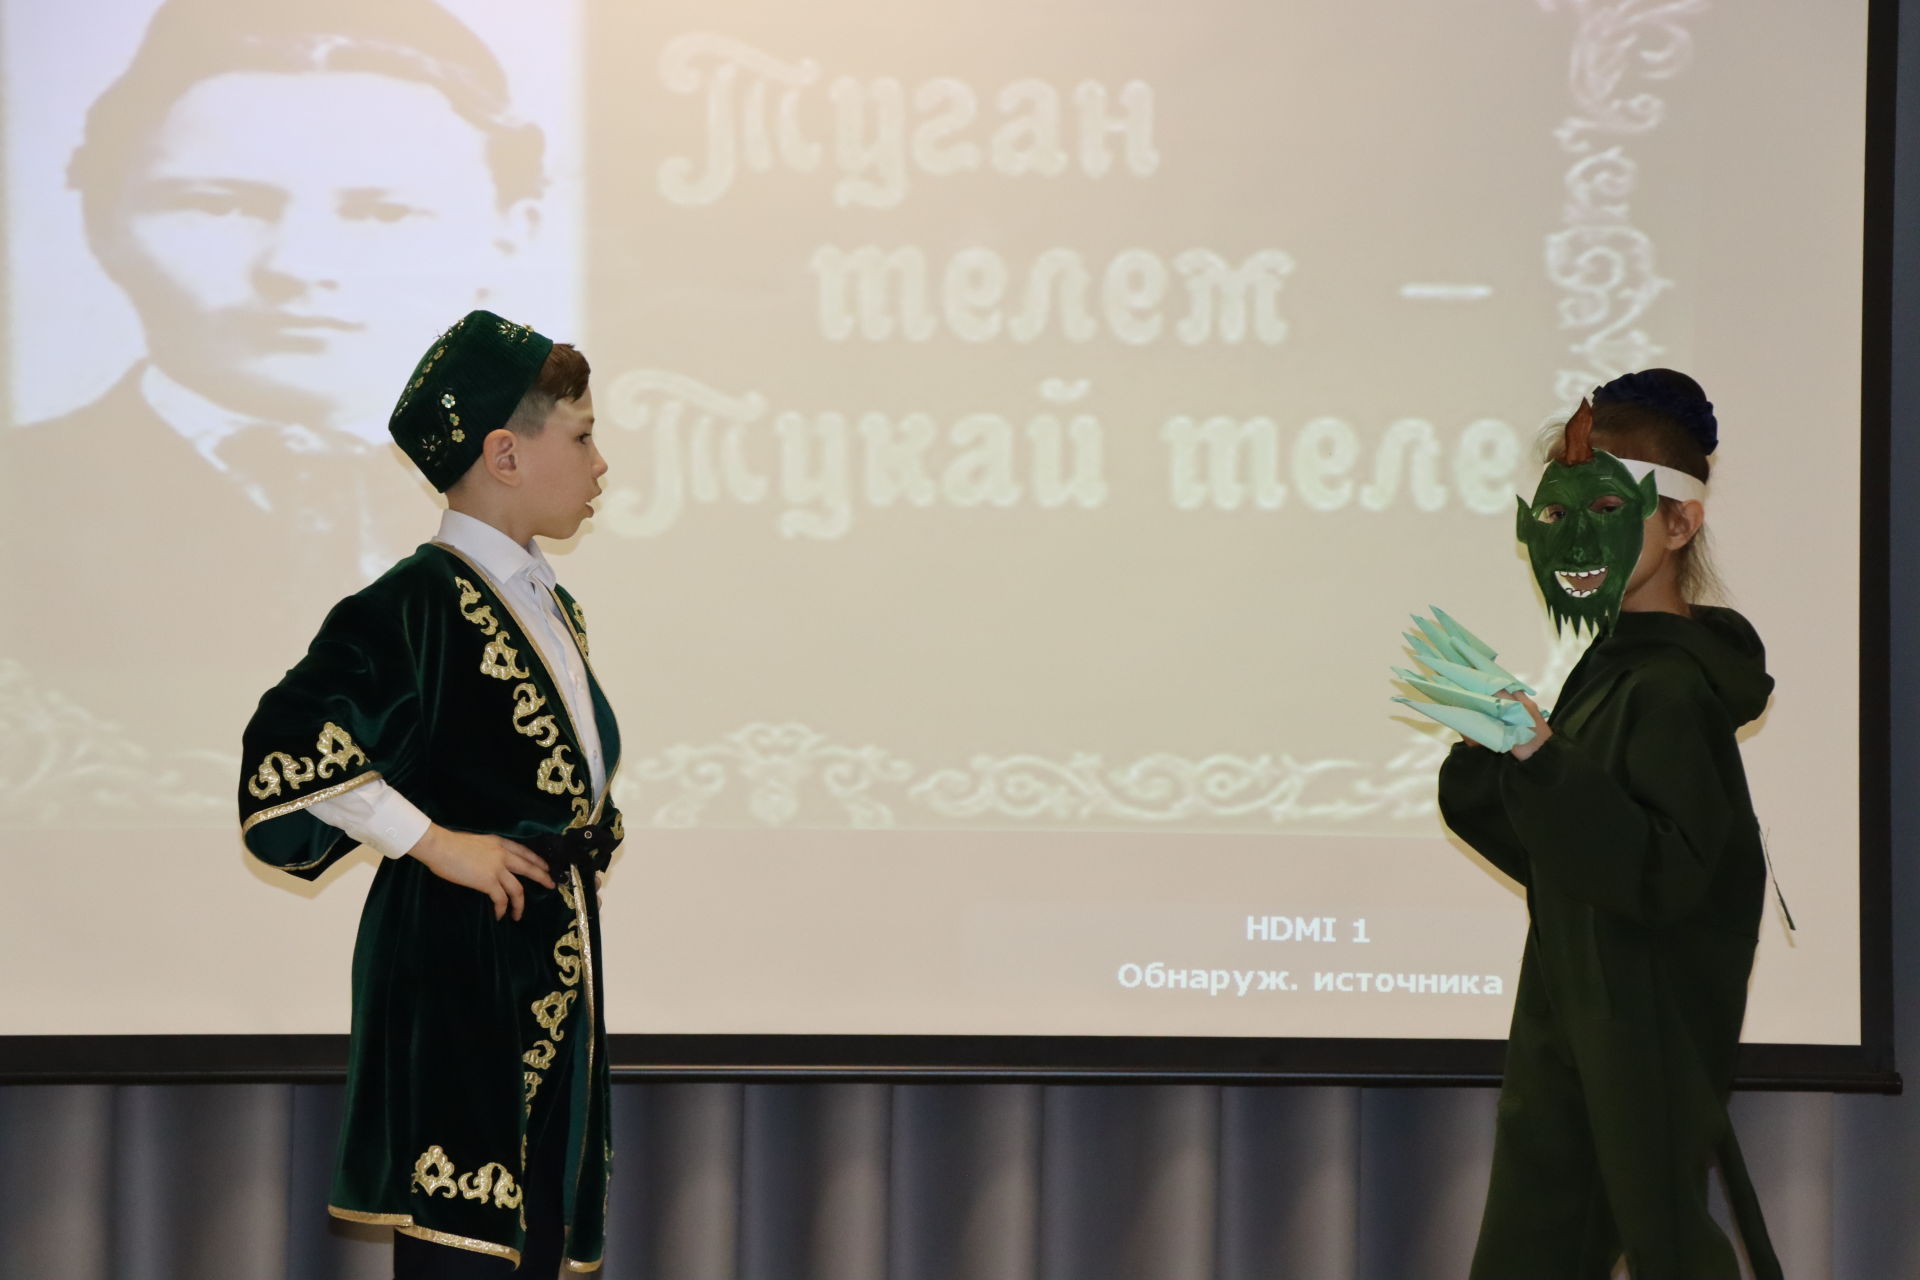 Нурлатские дети рассказали стихотворение Габдуллы Тукая «Туган тел» на 6-ти языках